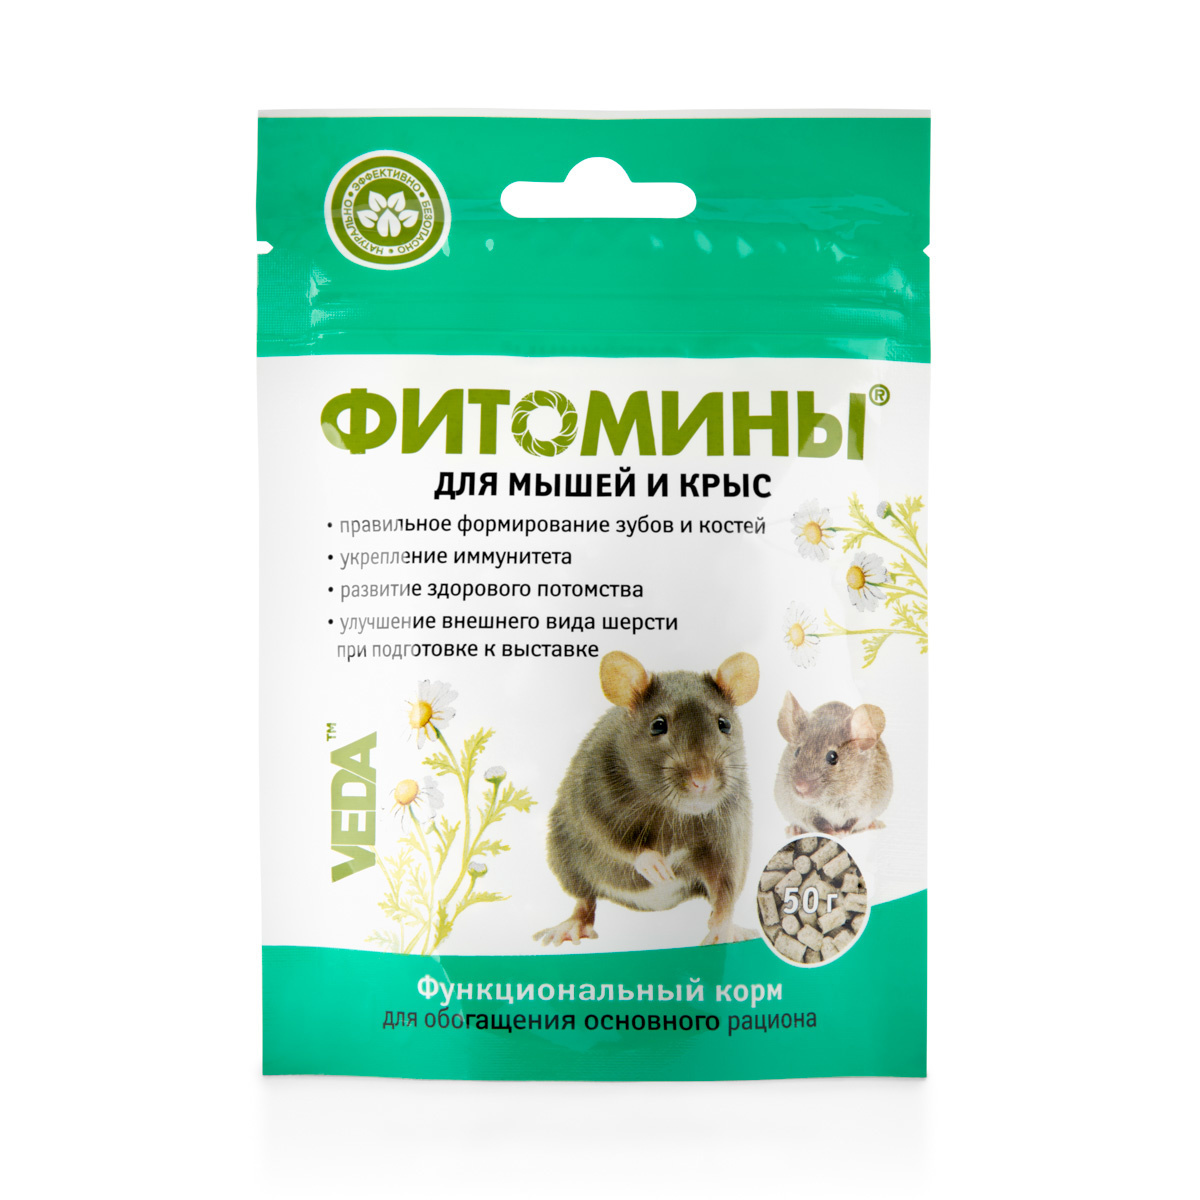 Веда Веда фитомины для мышей и крыс (50 г) веда фитомины для кастрированых котов 100таб